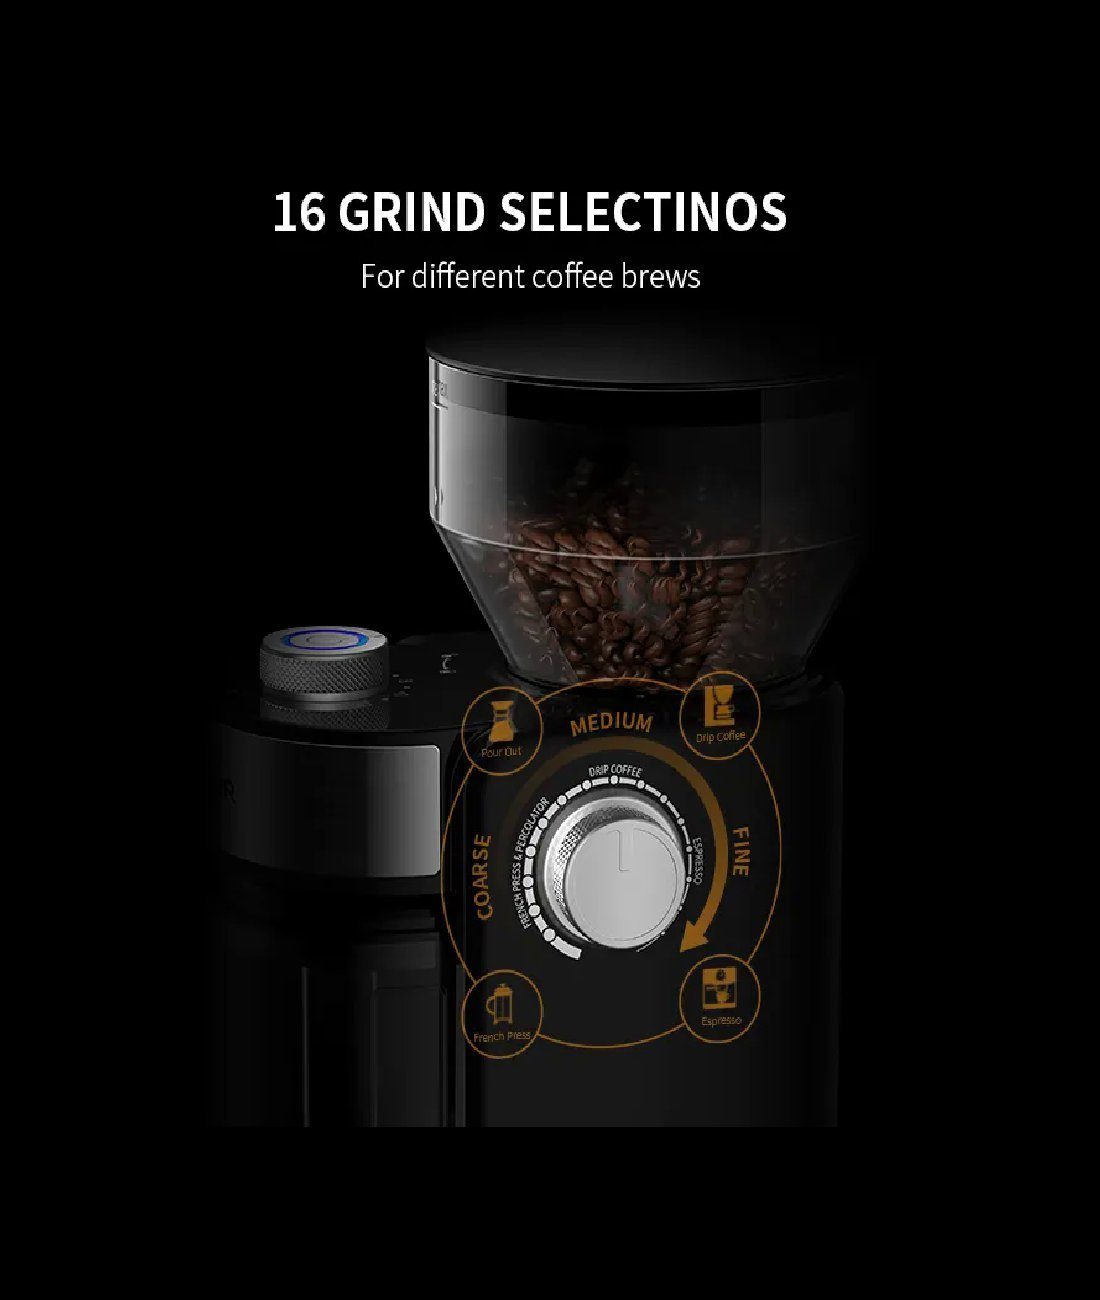 Shardor Kaffeemühle g in Bohnenbehälter, oder liegt 16 W, 240,00 Grob Steuerung Mahlgrade Ihrer Kaffeemühle, durch 150 fein